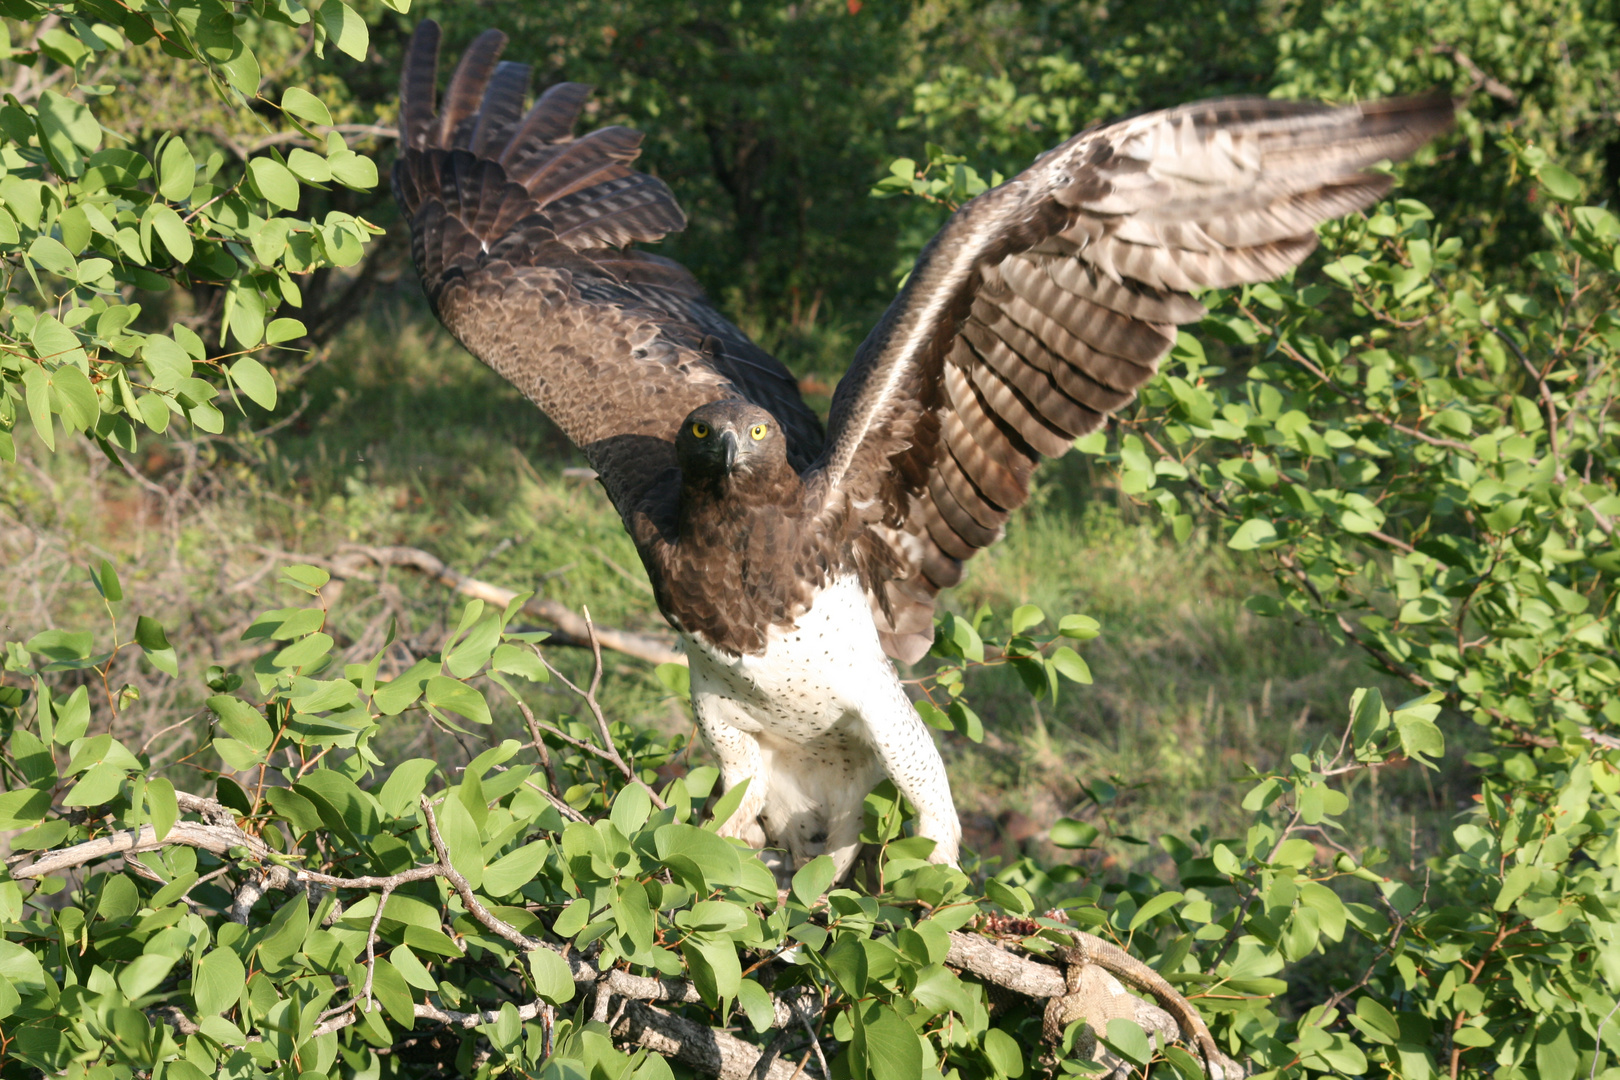 Eagle with prey